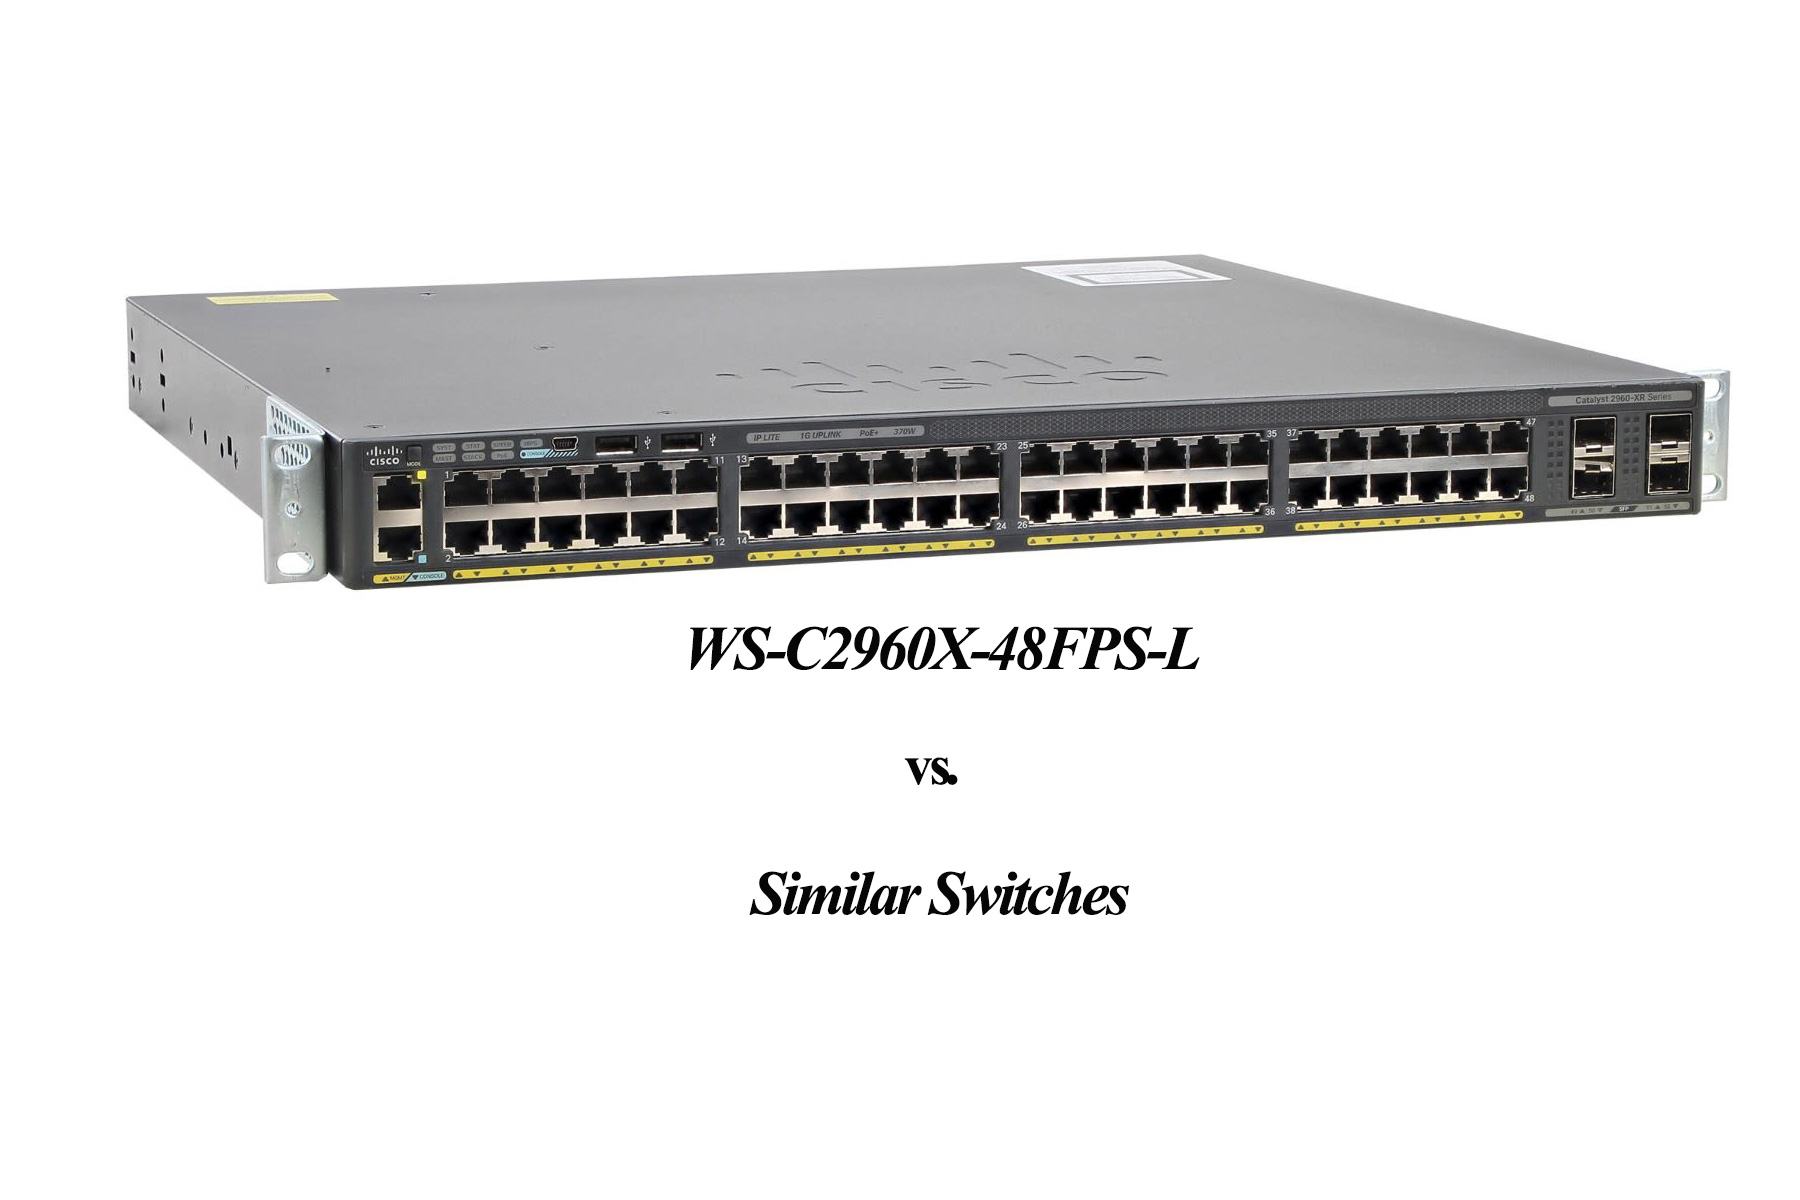 مقایسه سوئیچ WS-C2960X-48FPS-L سیسکو با سوئیچهای مشابه